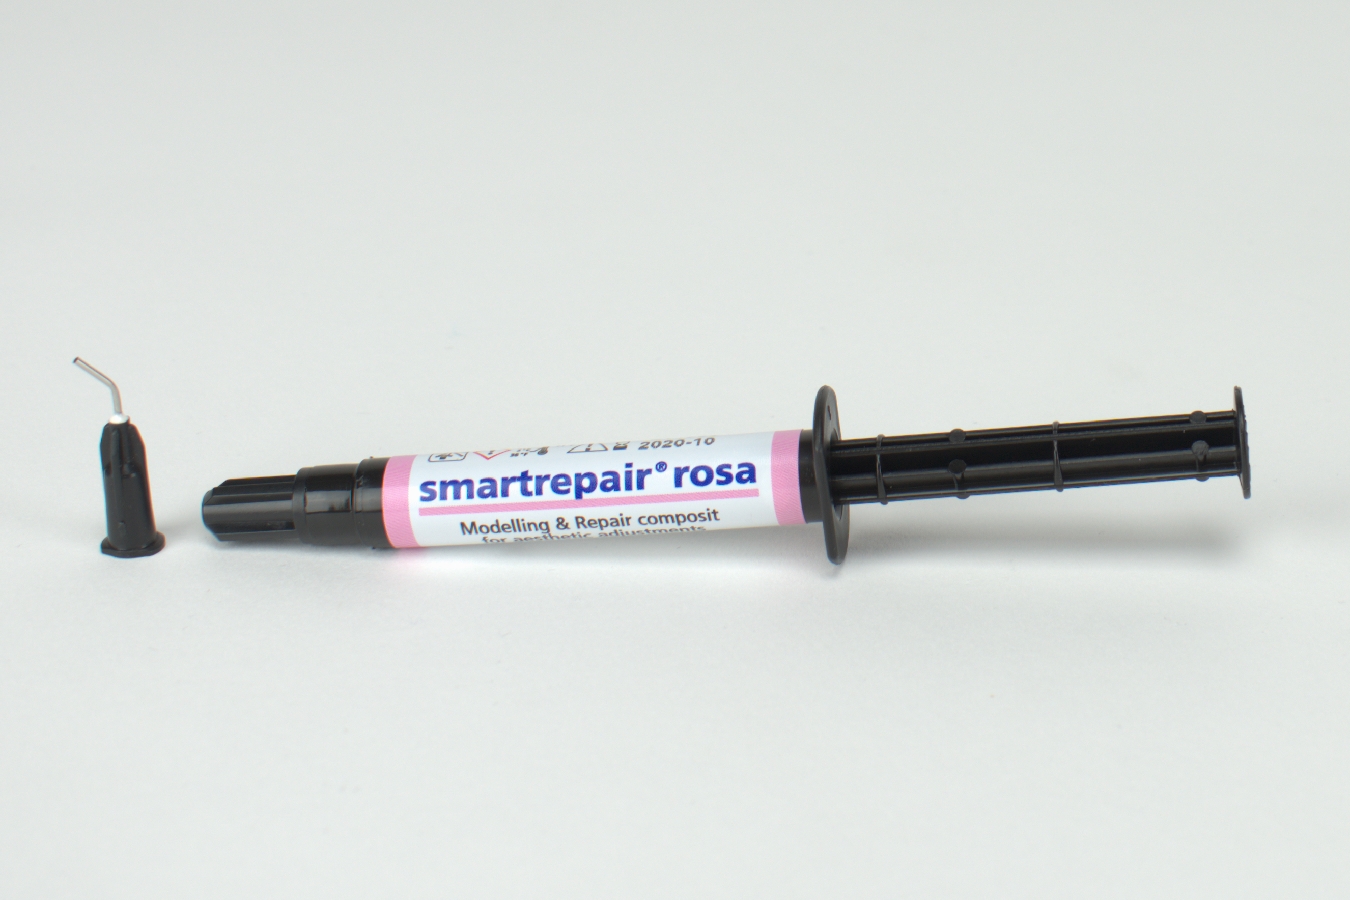 smartrepair rosa 3g